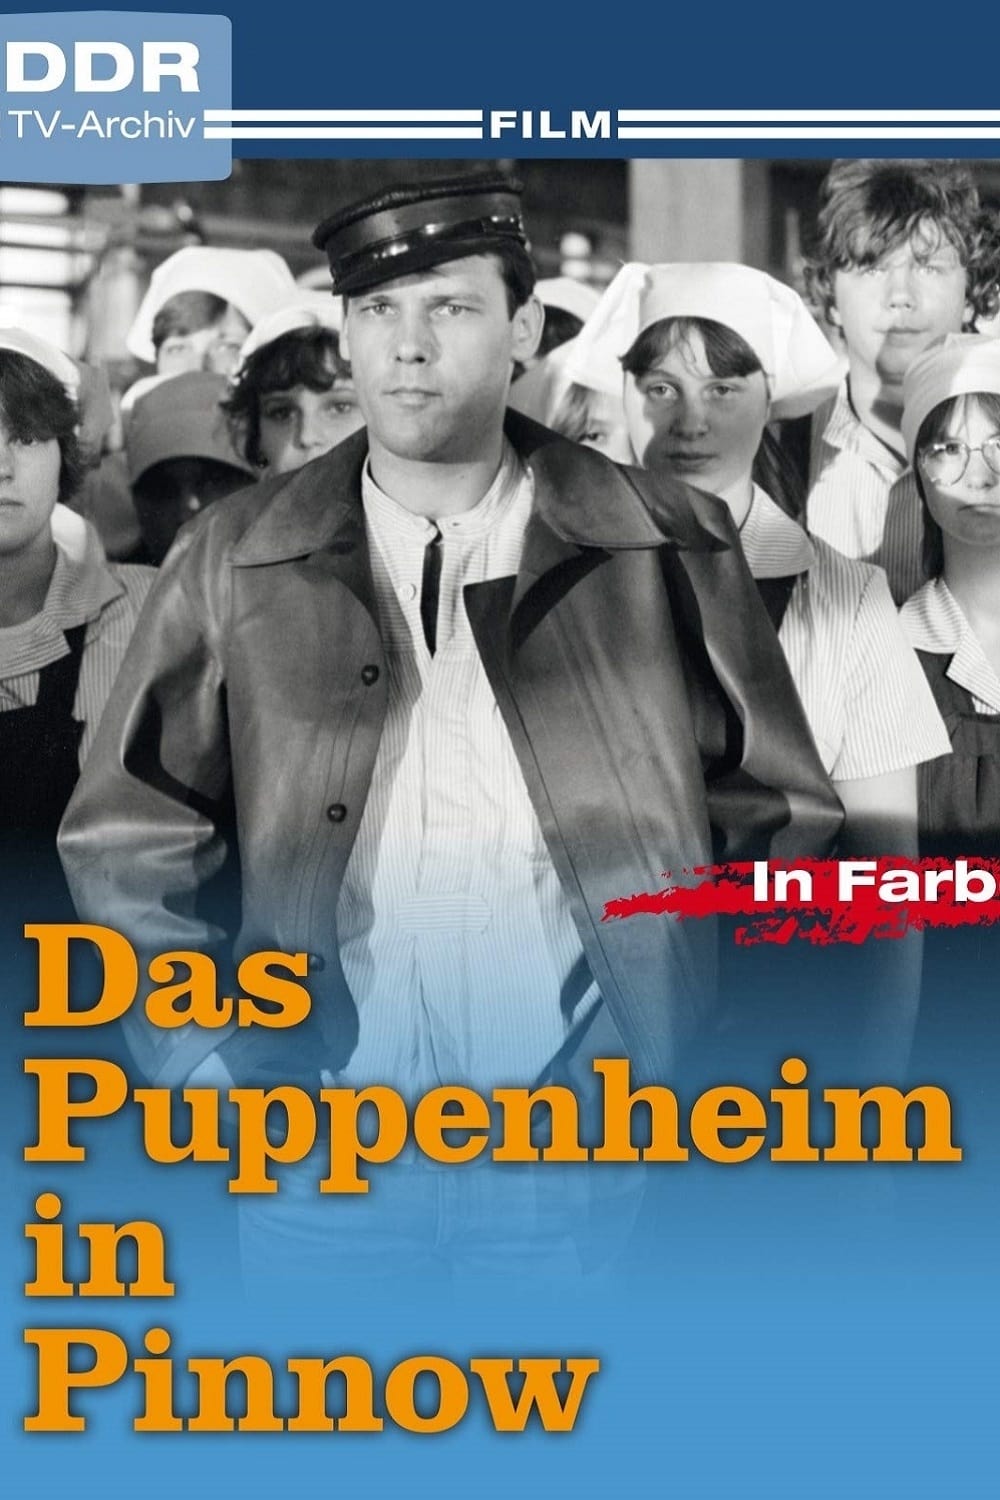 Das Puppenheim in Pinnow (1984)